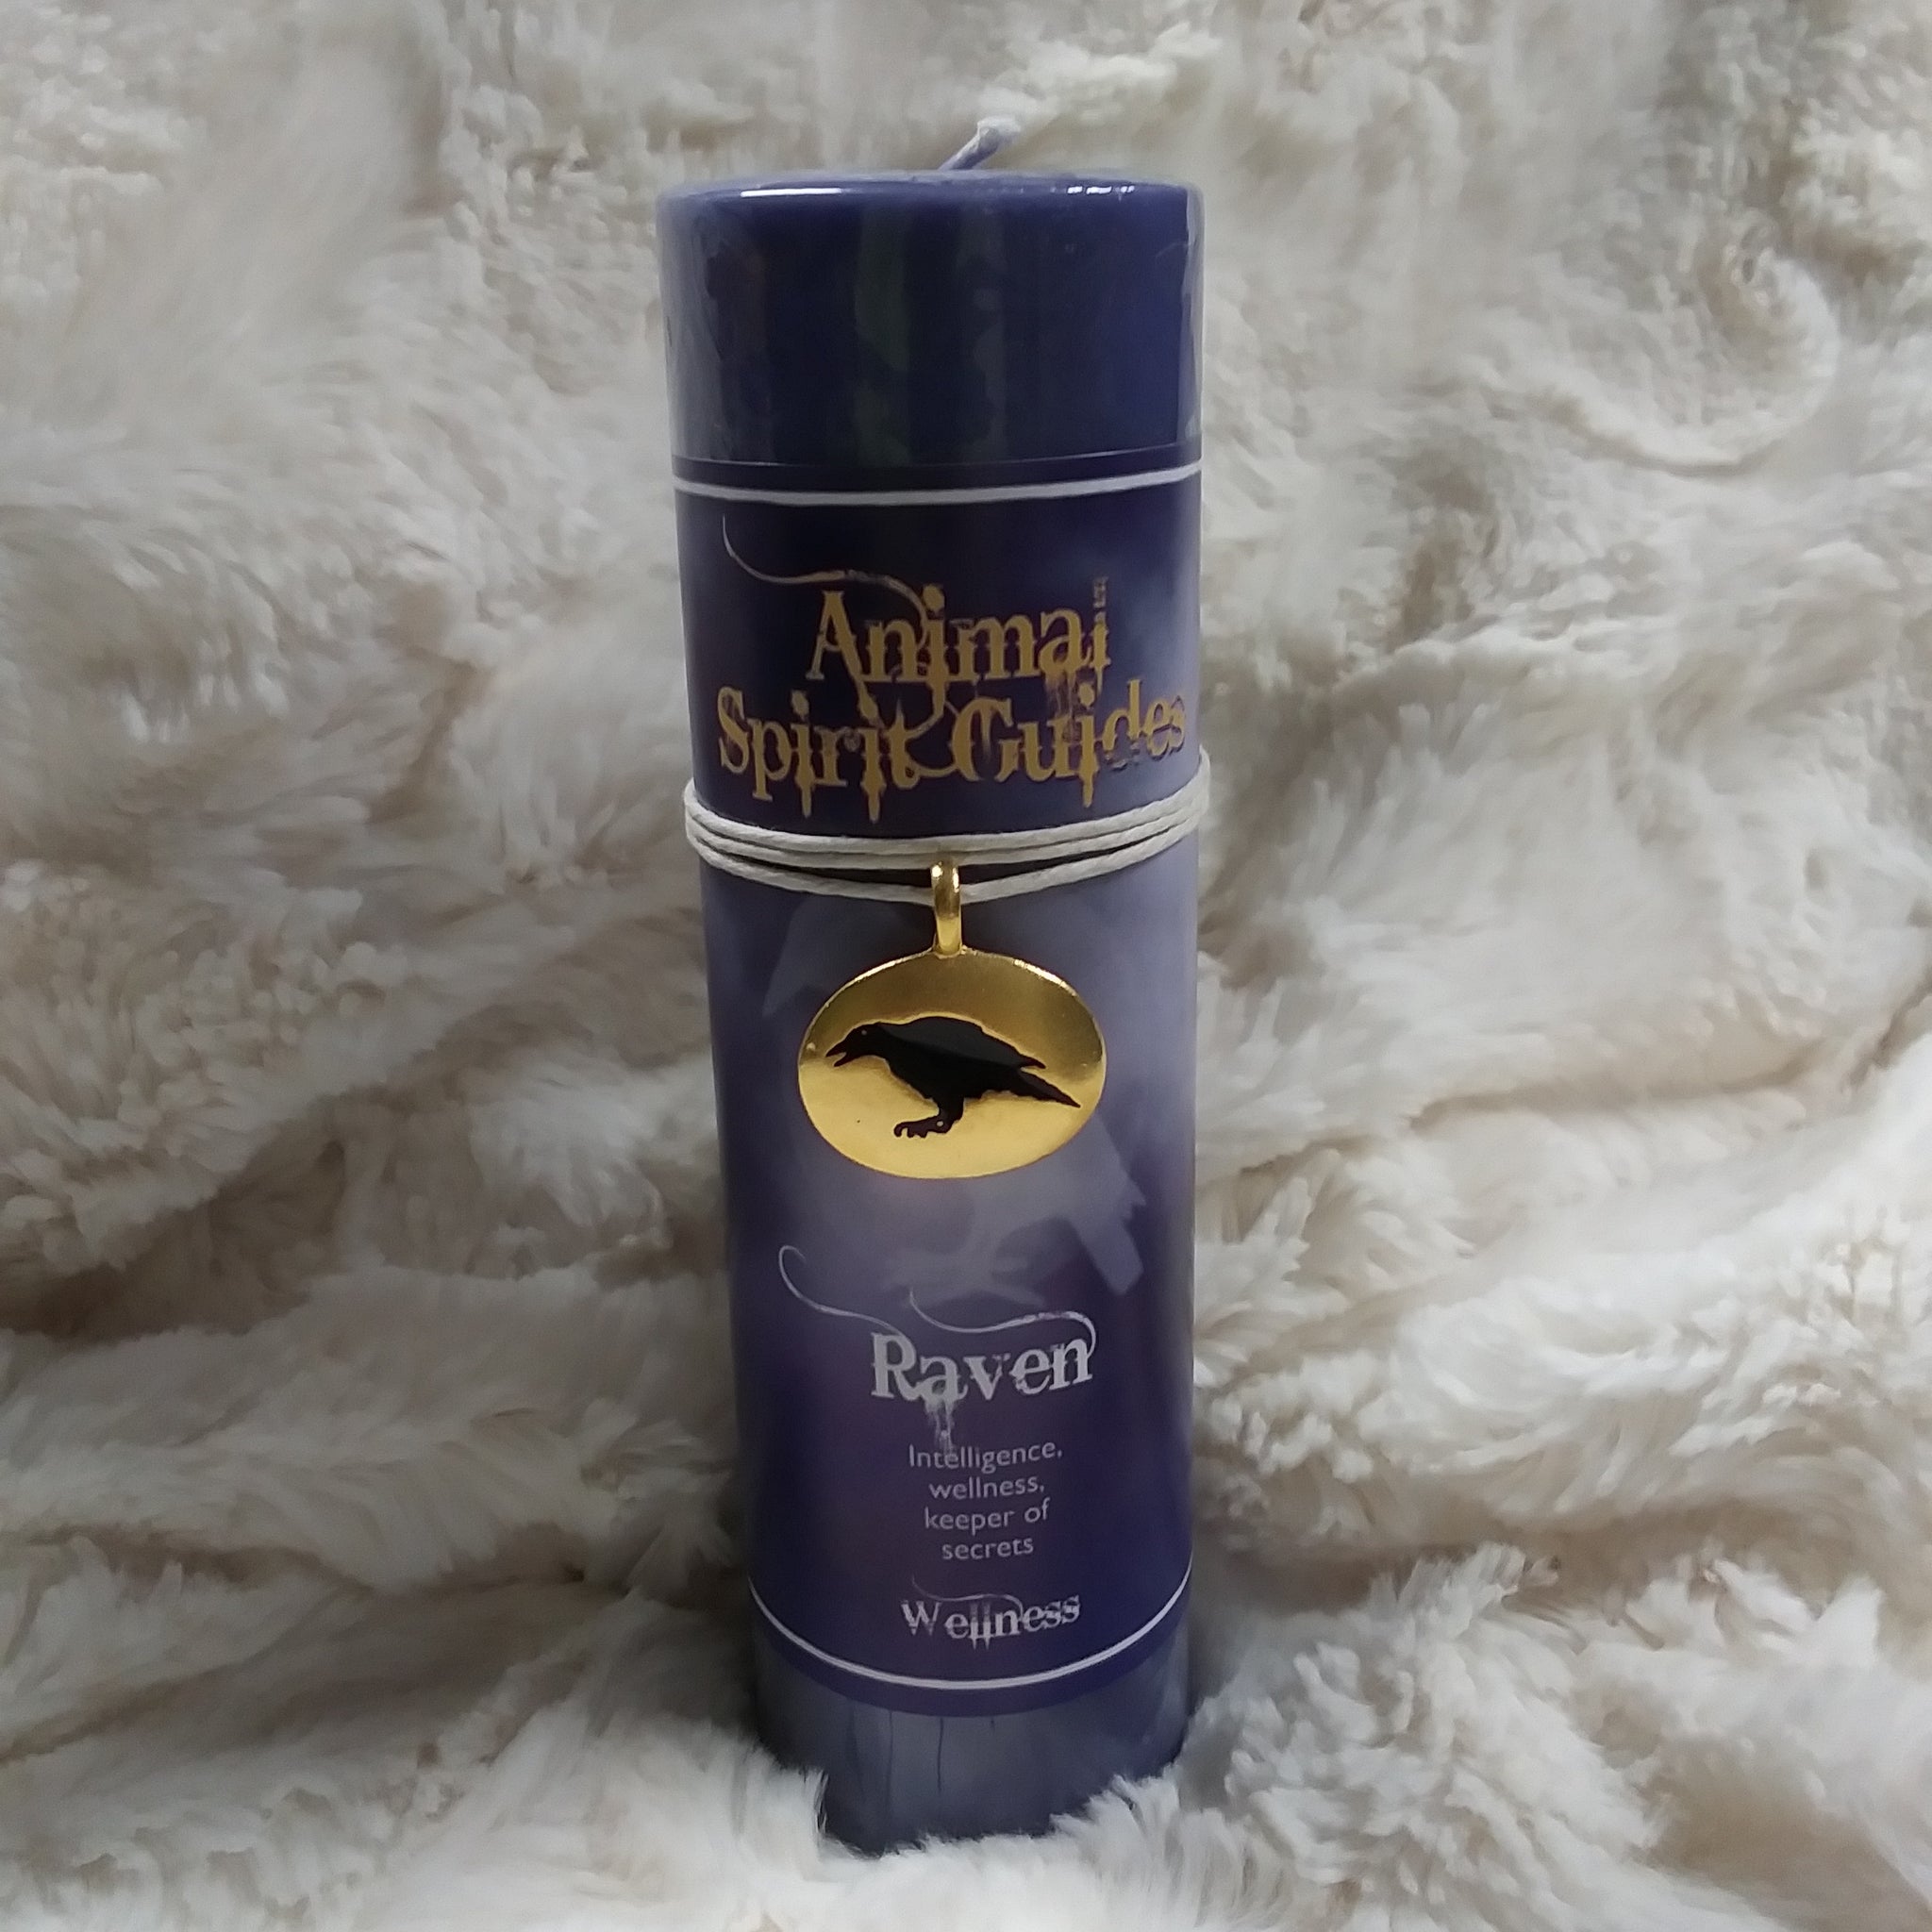 Raven Animal Spirit Guide Candle